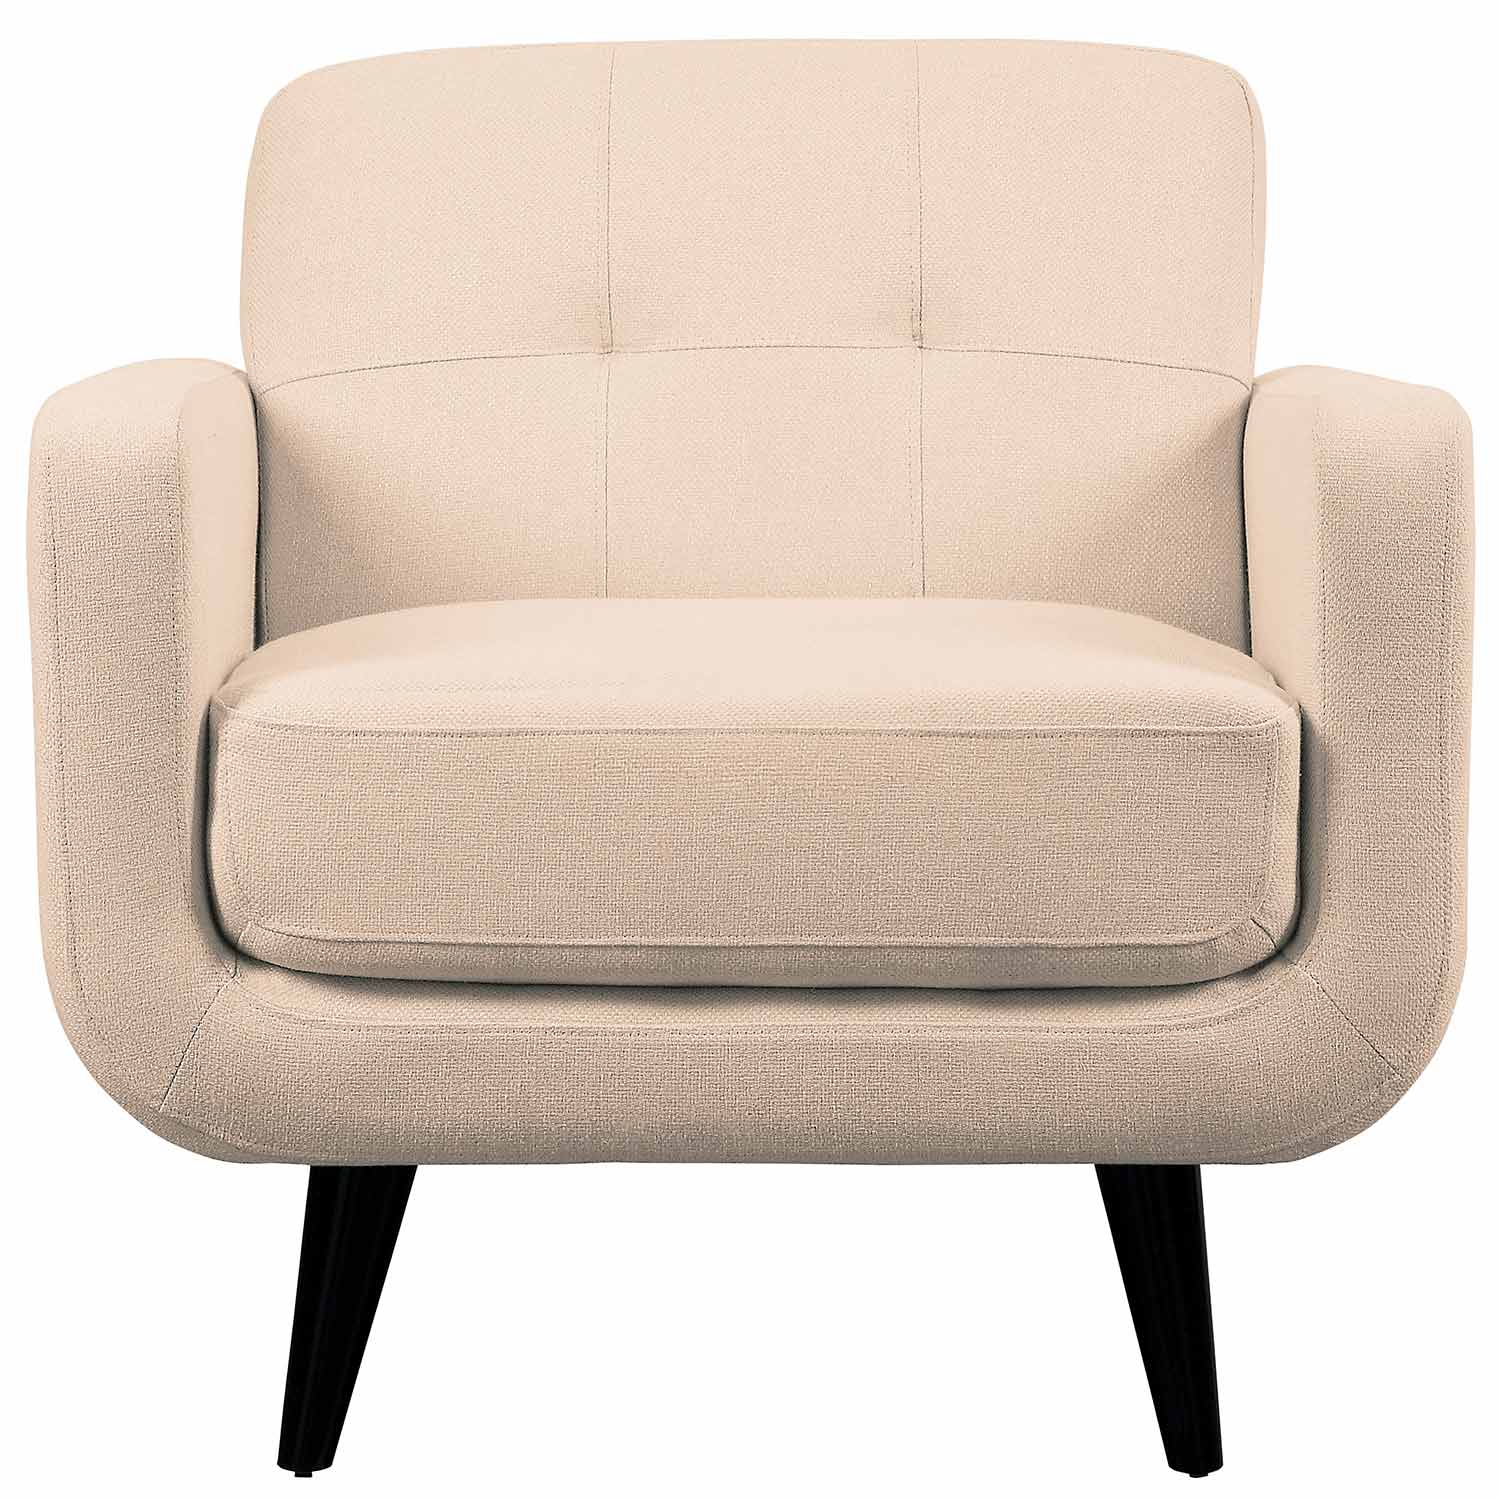 Homelegance Monroe Chair - Beige